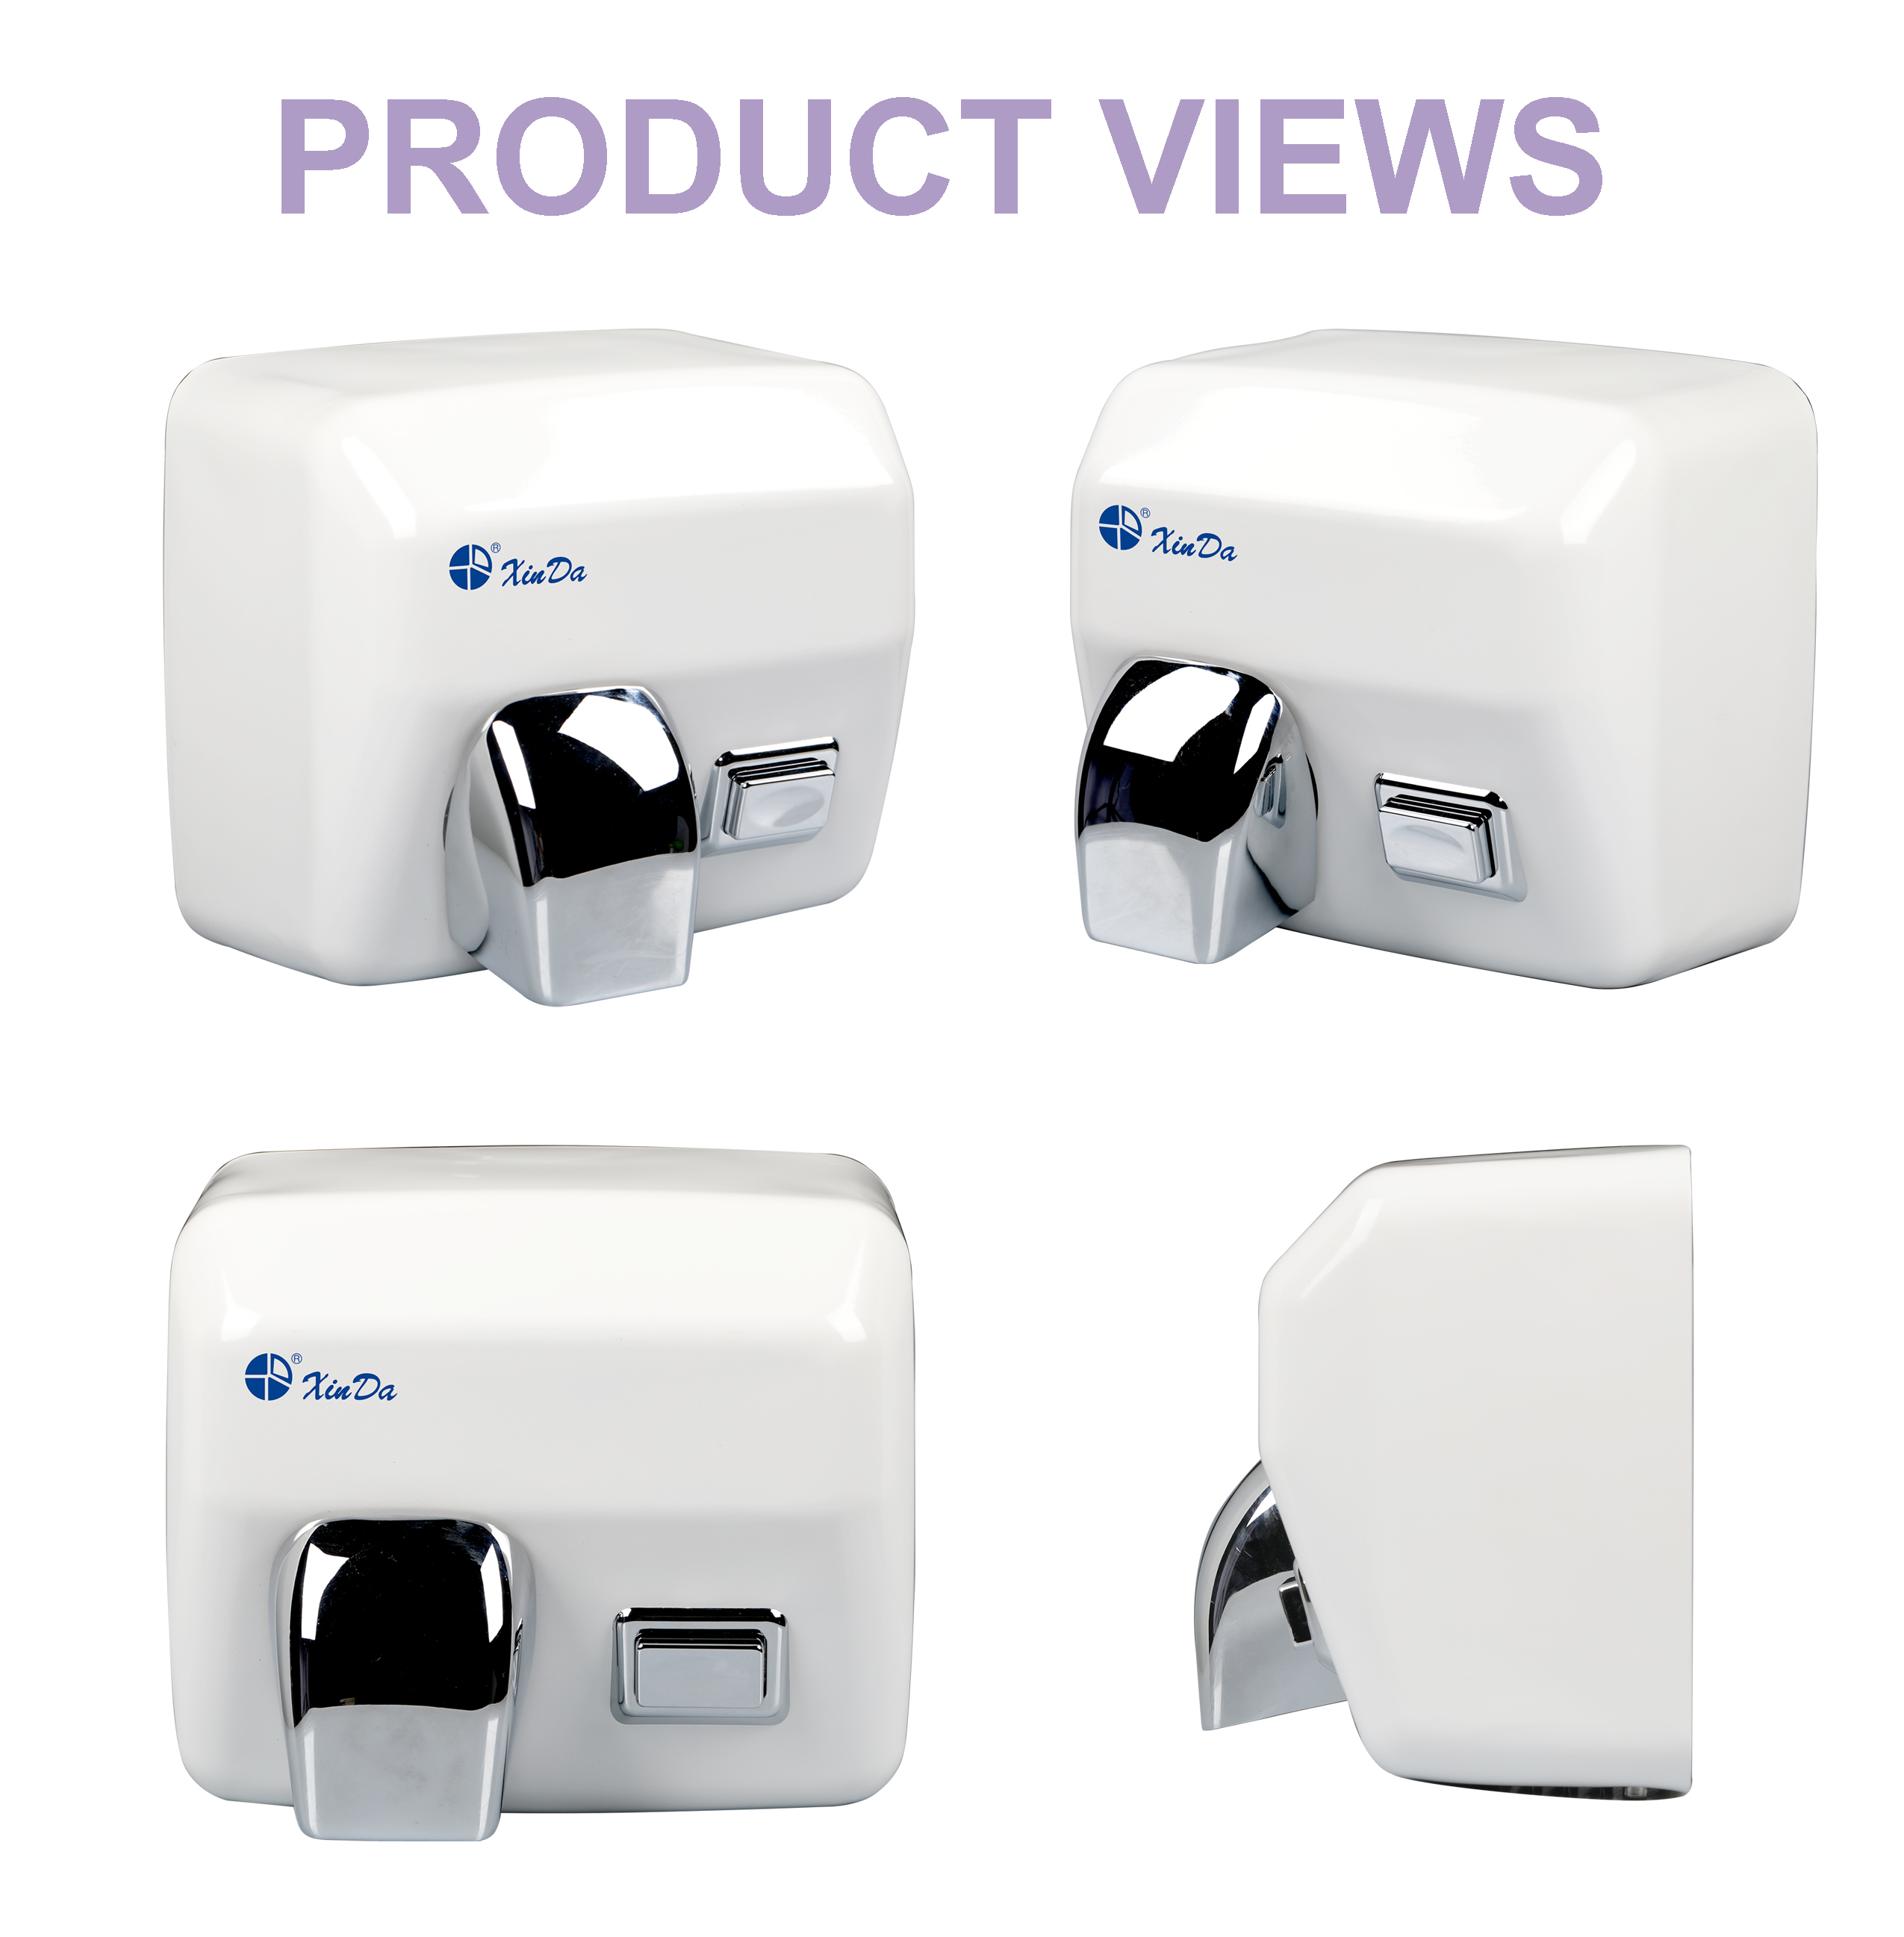 XinDa GSQ250C White Оптовая высококачественная автоматическая сушилка для рук с батарейным питанием Сушилка для рук